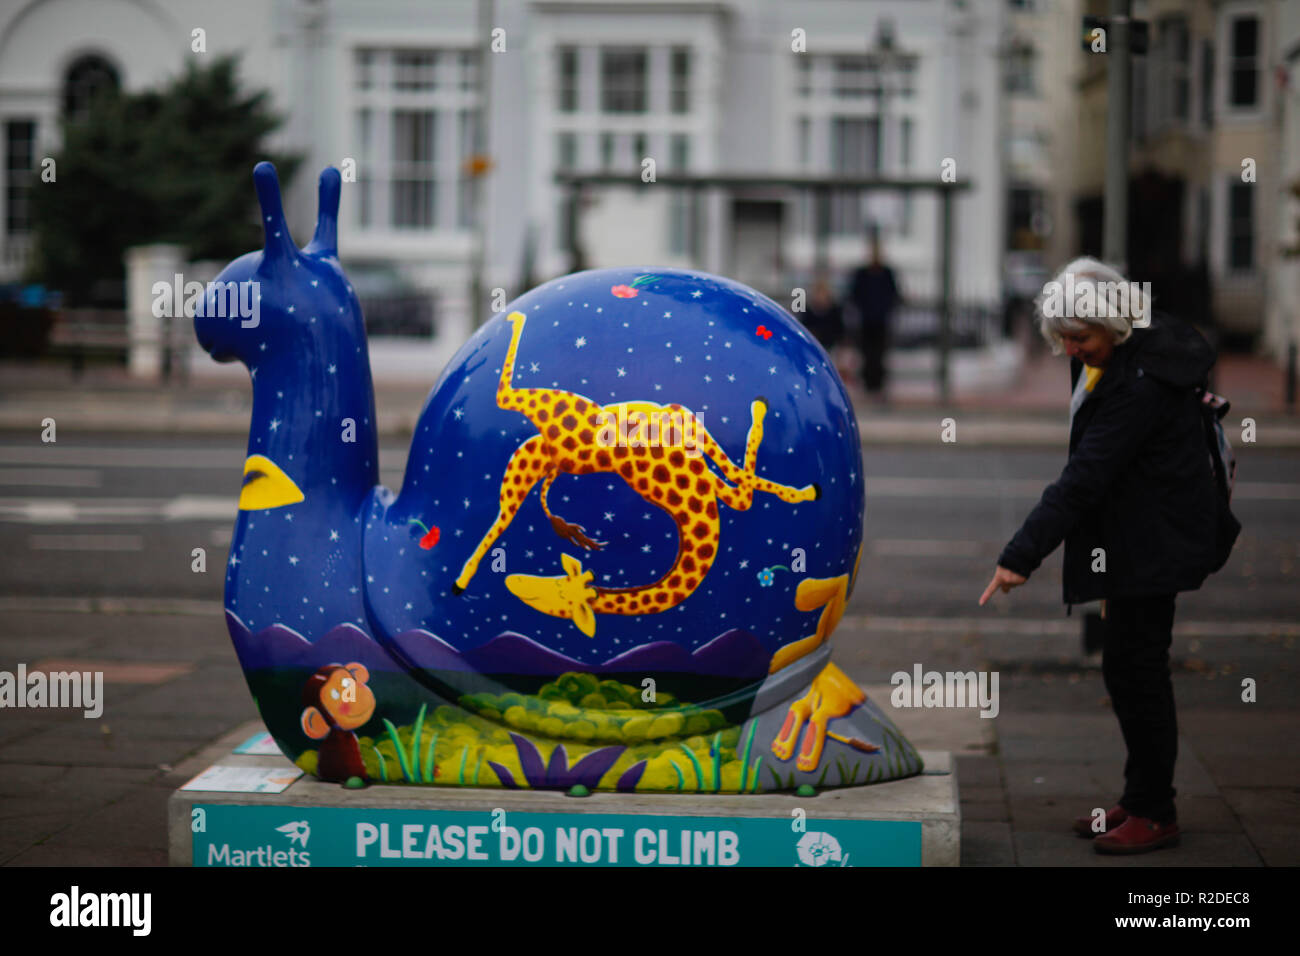 Noviembre 15, 2018 - Brighton y Hove actualmente están llenas de caracoles gigantes como parte de una estela de arte de recaudación de fondos para recaudar fondos parael Martlets Hospicio. 59 caracoles gigantes han sido en la pantalla alrededor de Brighton y Hove el 15 de septiembre hasta el 18 de noviembre, con cada caracol gigante patrocinado por una empresa local y decoradas por un artista de la ciudad como parte de una campaña para recaudar fondos esenciales para apoyar el Martlets Hospicio. El sendero, conocido como el Snailway, se extiende entre el puerto deportivo de Brighton y Hove Laguna y hasta Preston Park. Un evento de despedida y luego reunirlos y subasta para recaudar dinero para t Foto de stock